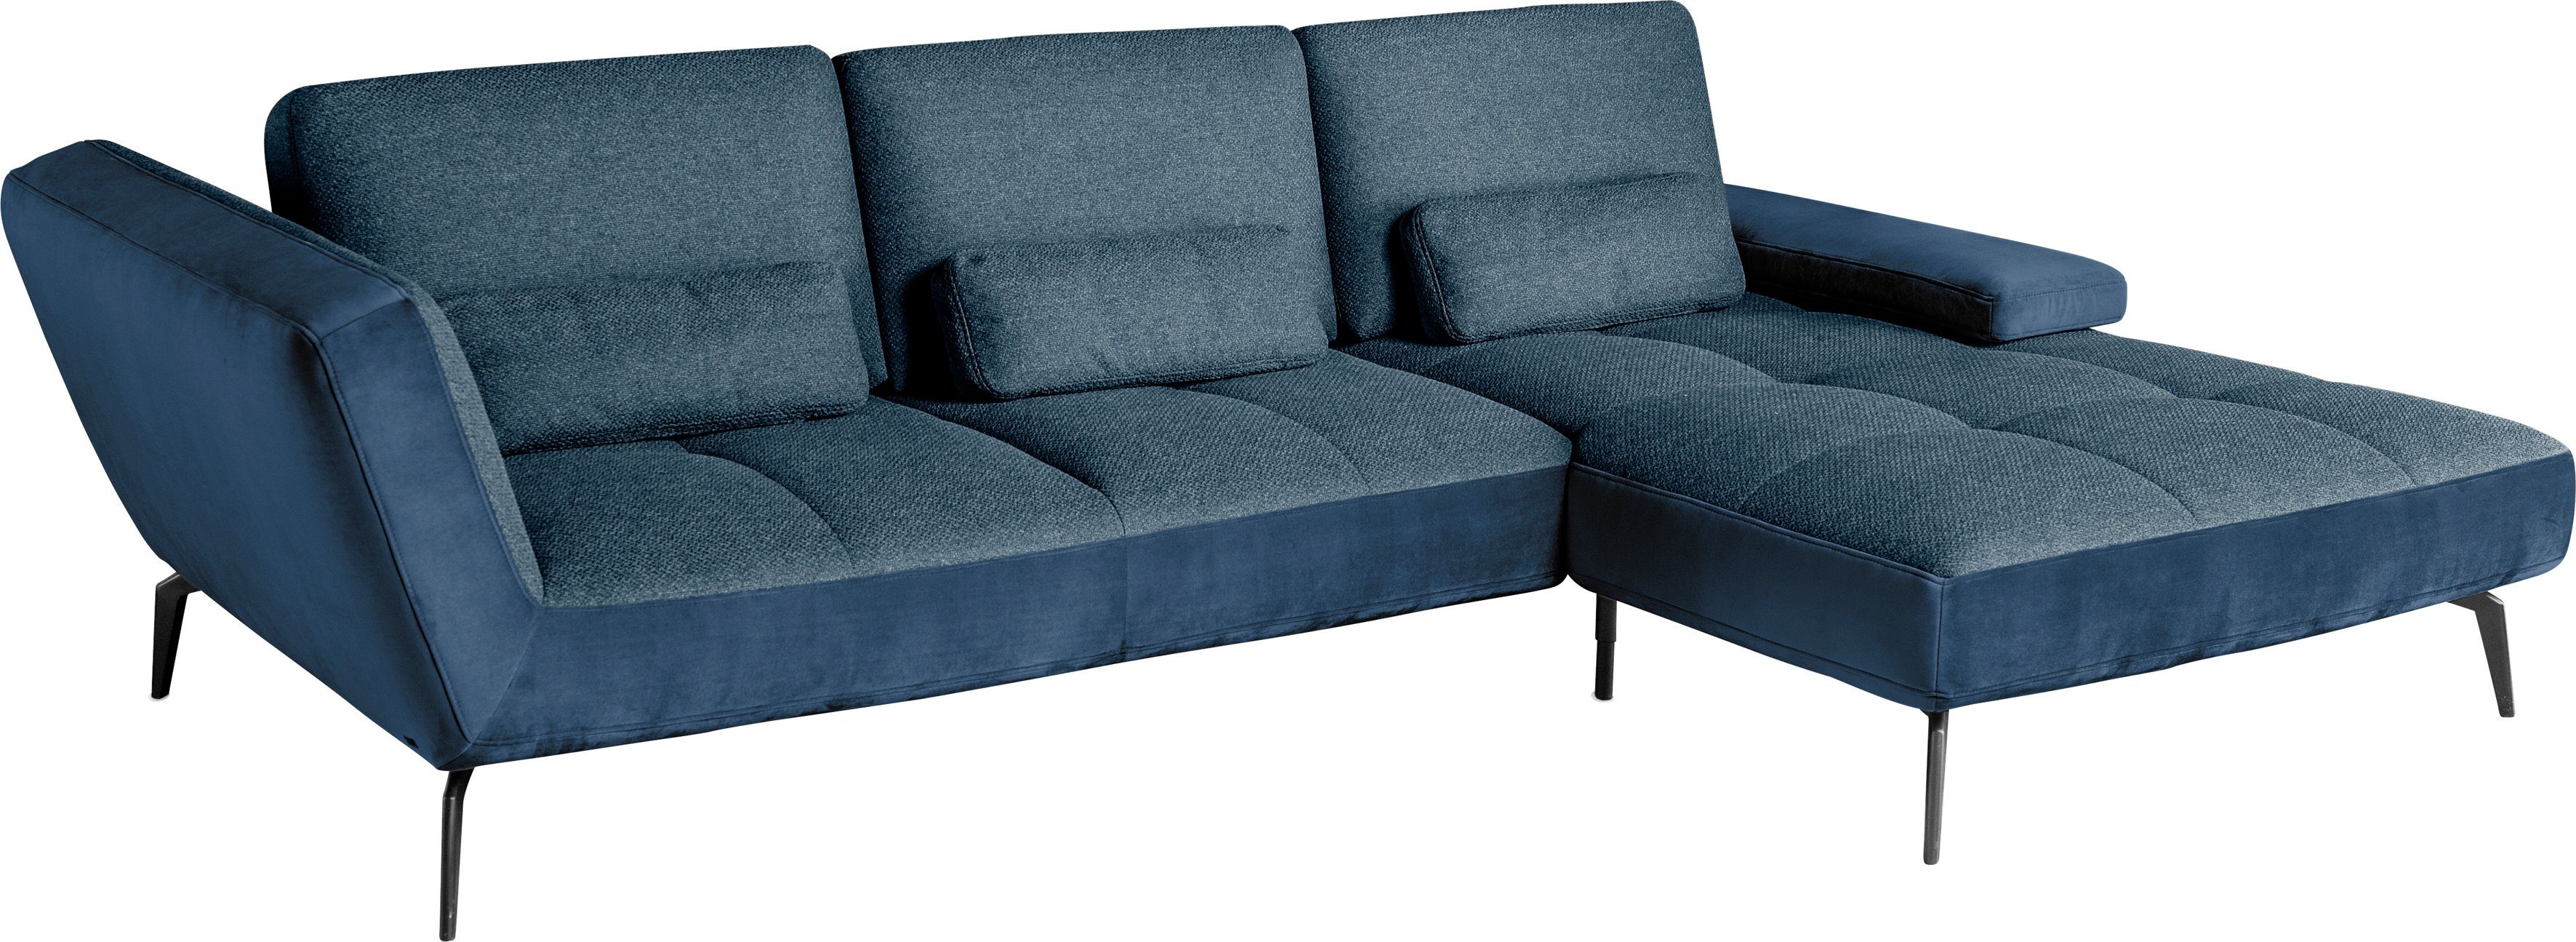 by Nierenkissen Musterring set inklusive 4300, Ecksofa dunkelblau49/blau81 SO one und Sitztiefenverstellung